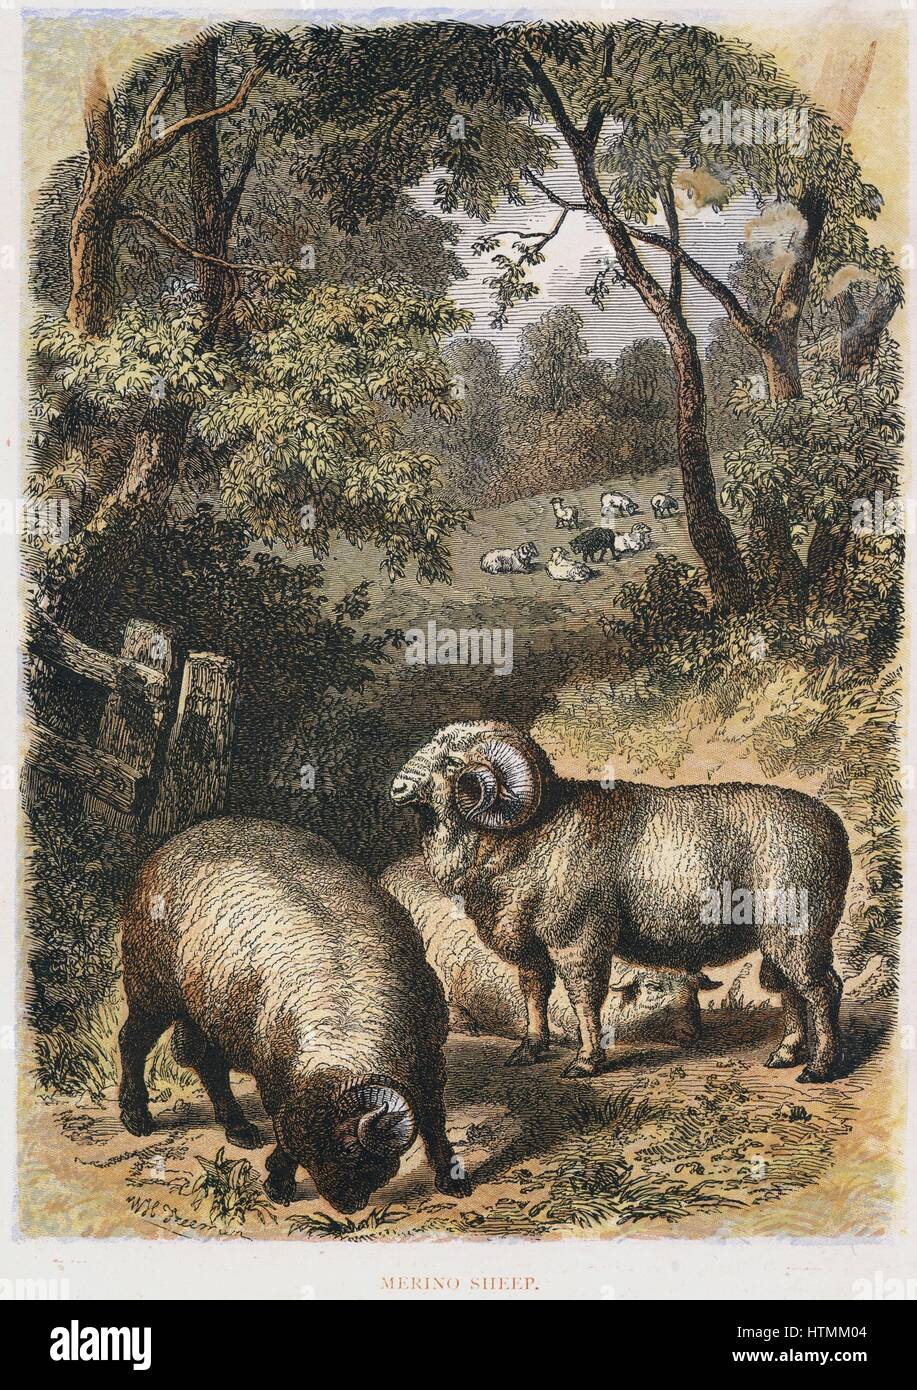 Merino-Schafe: Vielfalt bekannt für seine wolle. Viel in Australien Hand getönt Gravur bevorzugt veröffentlicht London c1860. Gravur. Stockfoto